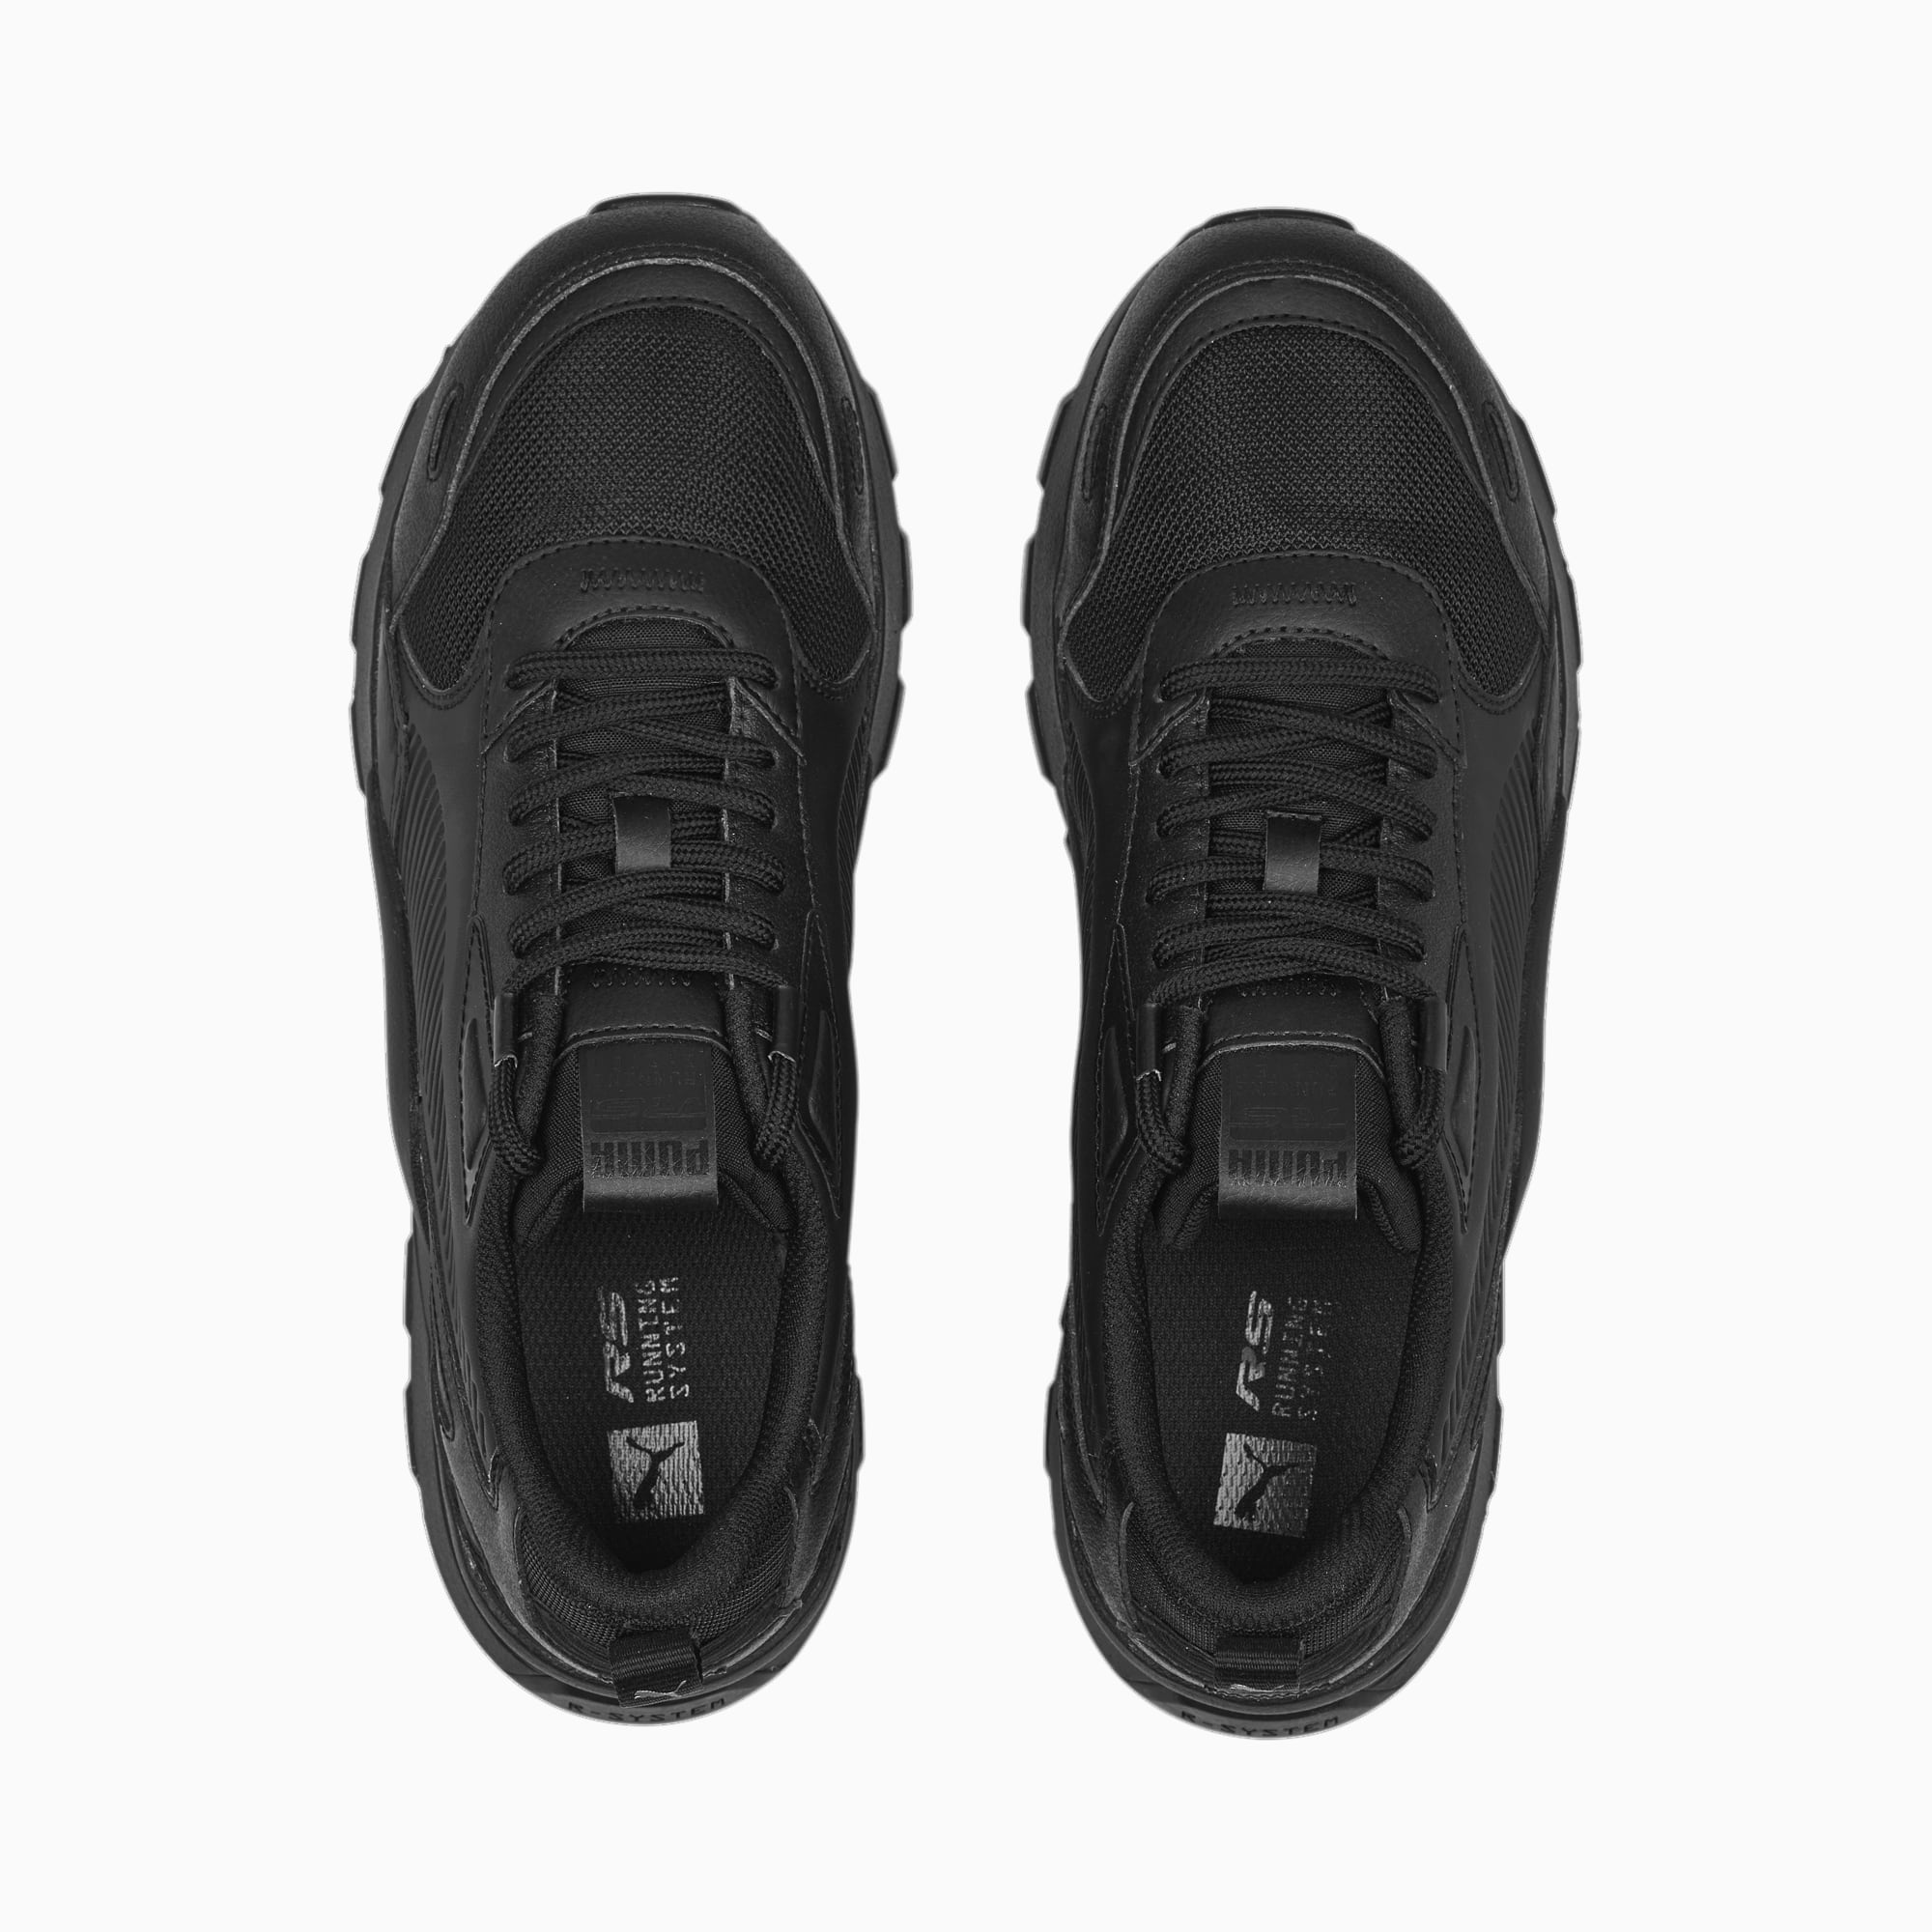 PUMA RS 3.0 Essentials Sneakers Schuhe, Schwarz/Weiß, Größe: 36, Schuhe